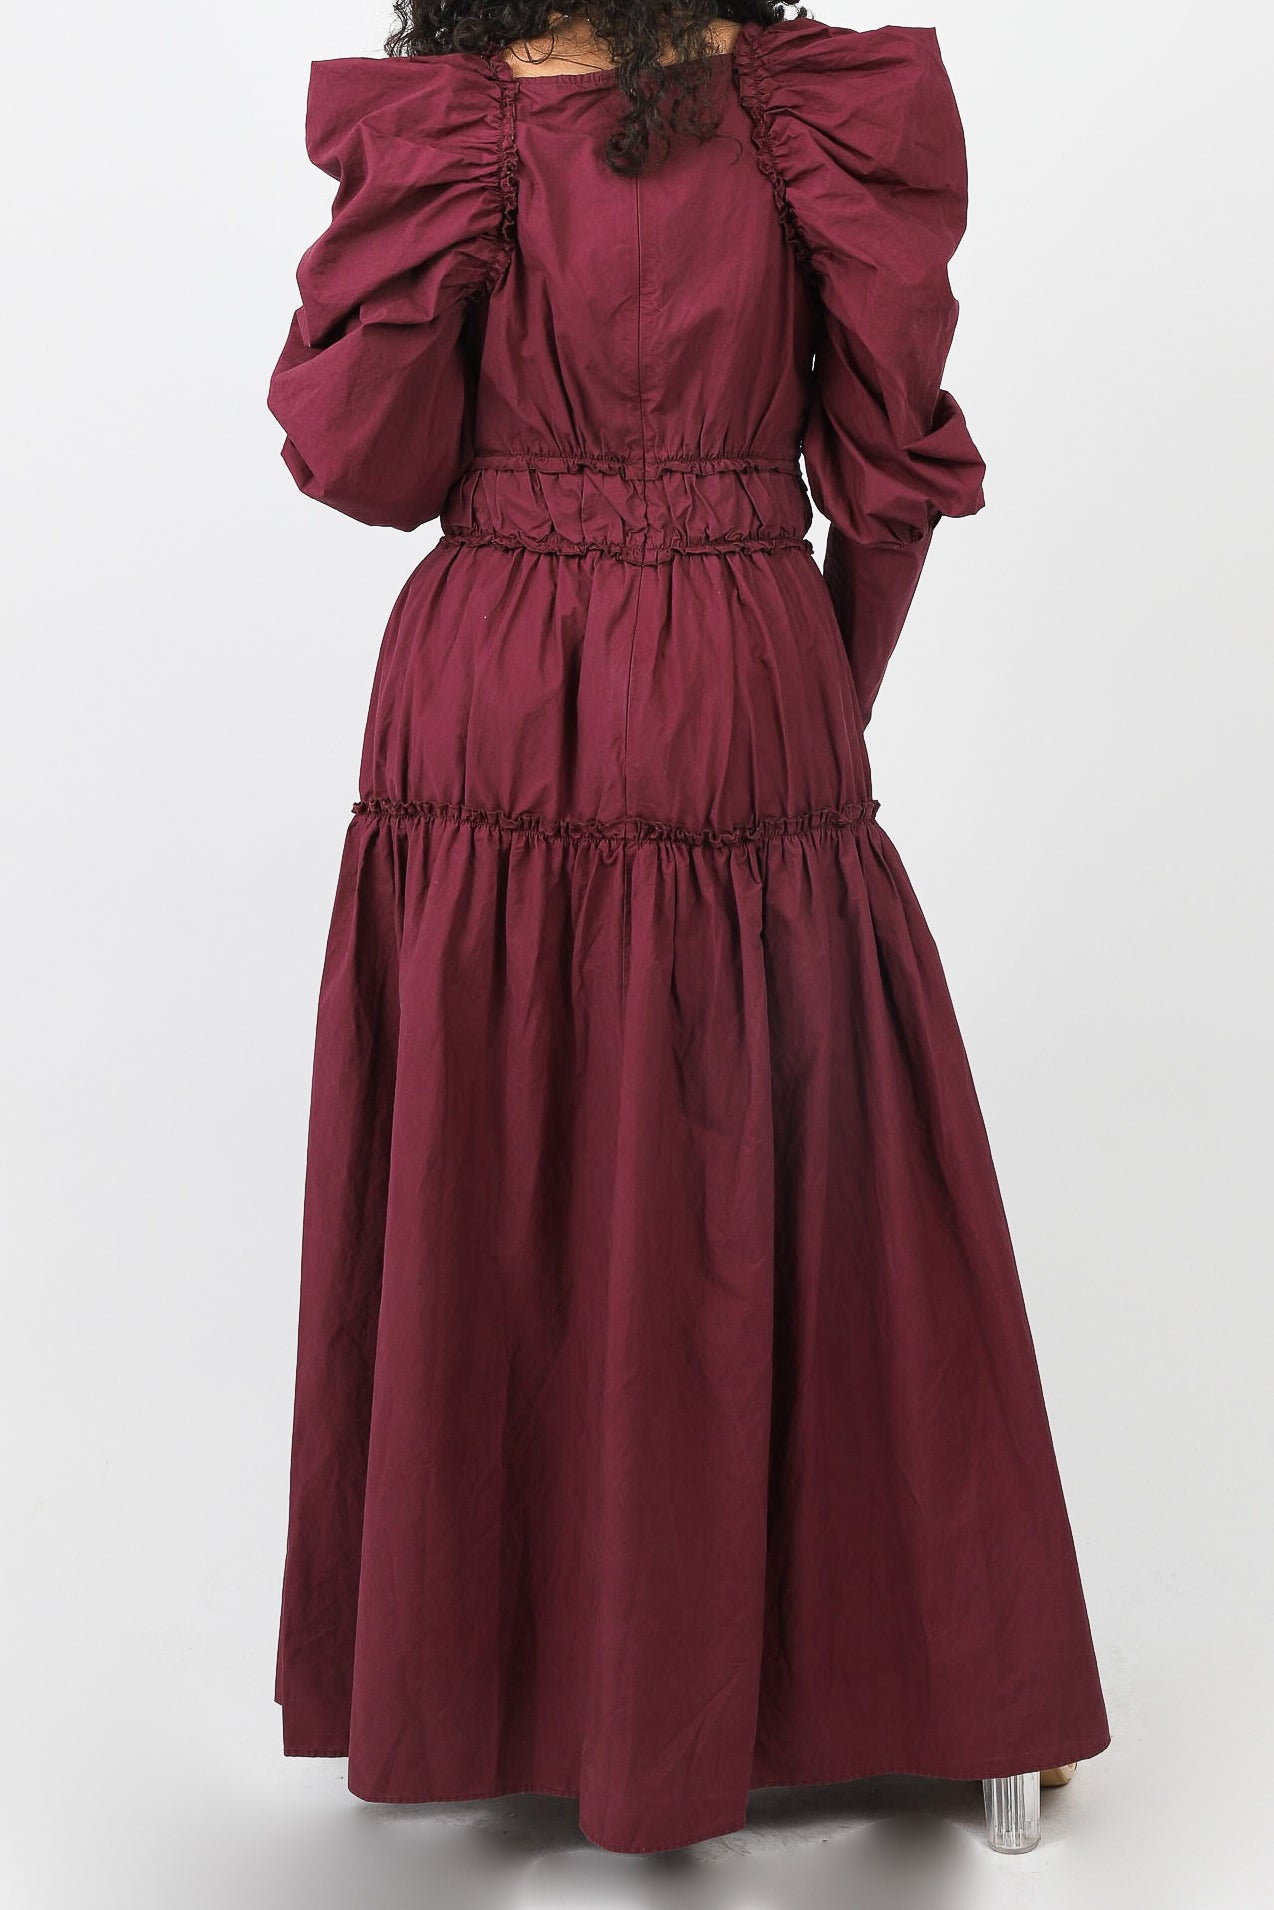 M7885Burgundy-dress-abaya